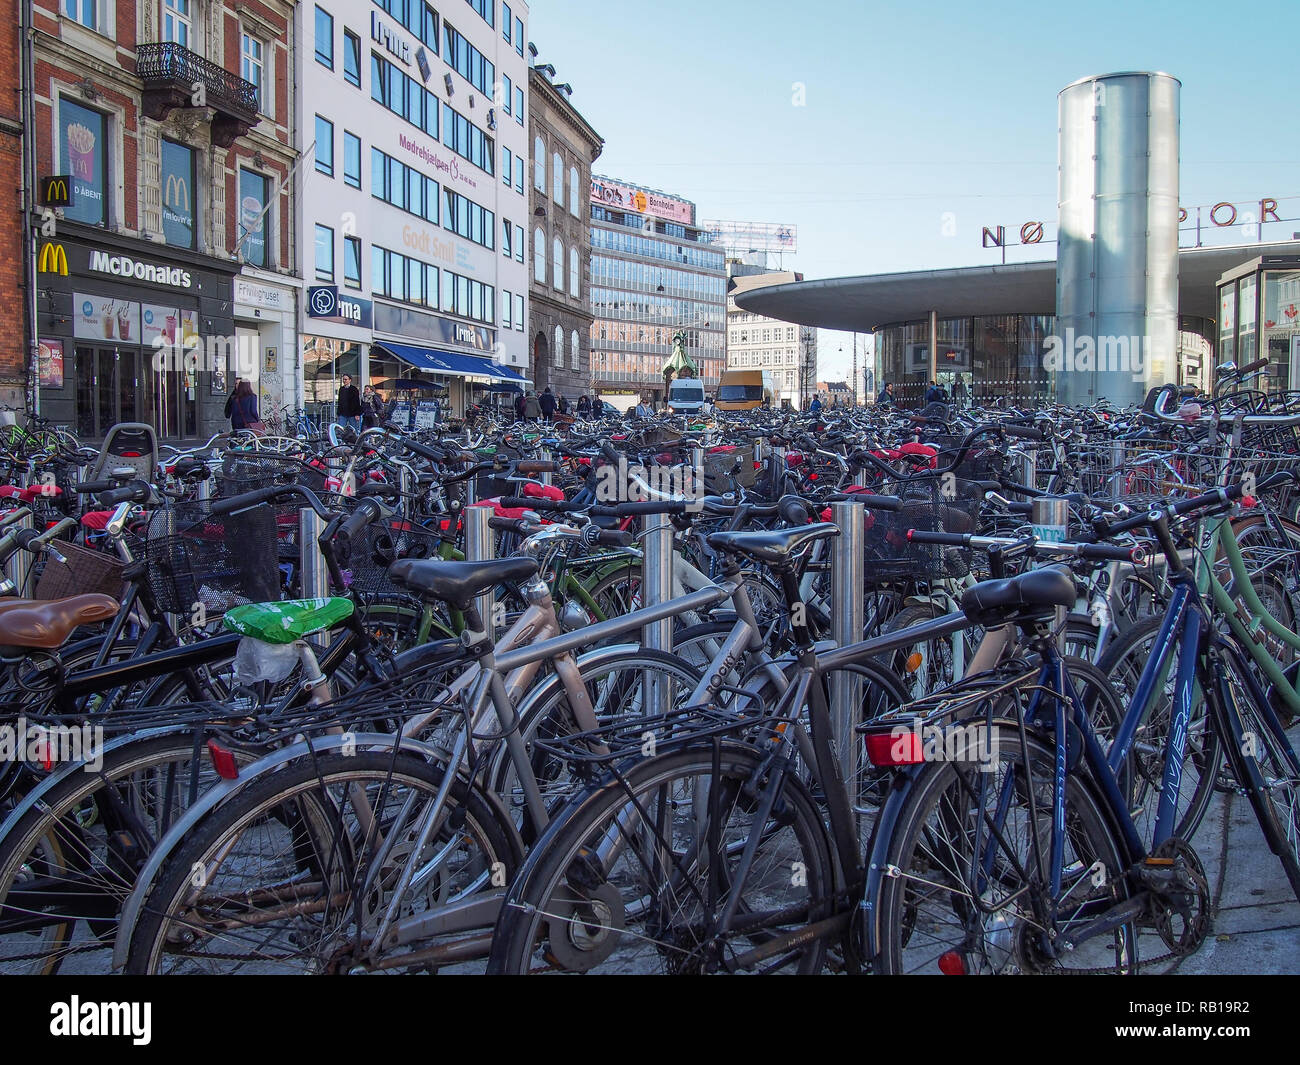 Copenhague, Danemark, 11 avril 2016 à : Lot de vélos garés dans le centre de la ville Banque D'Images